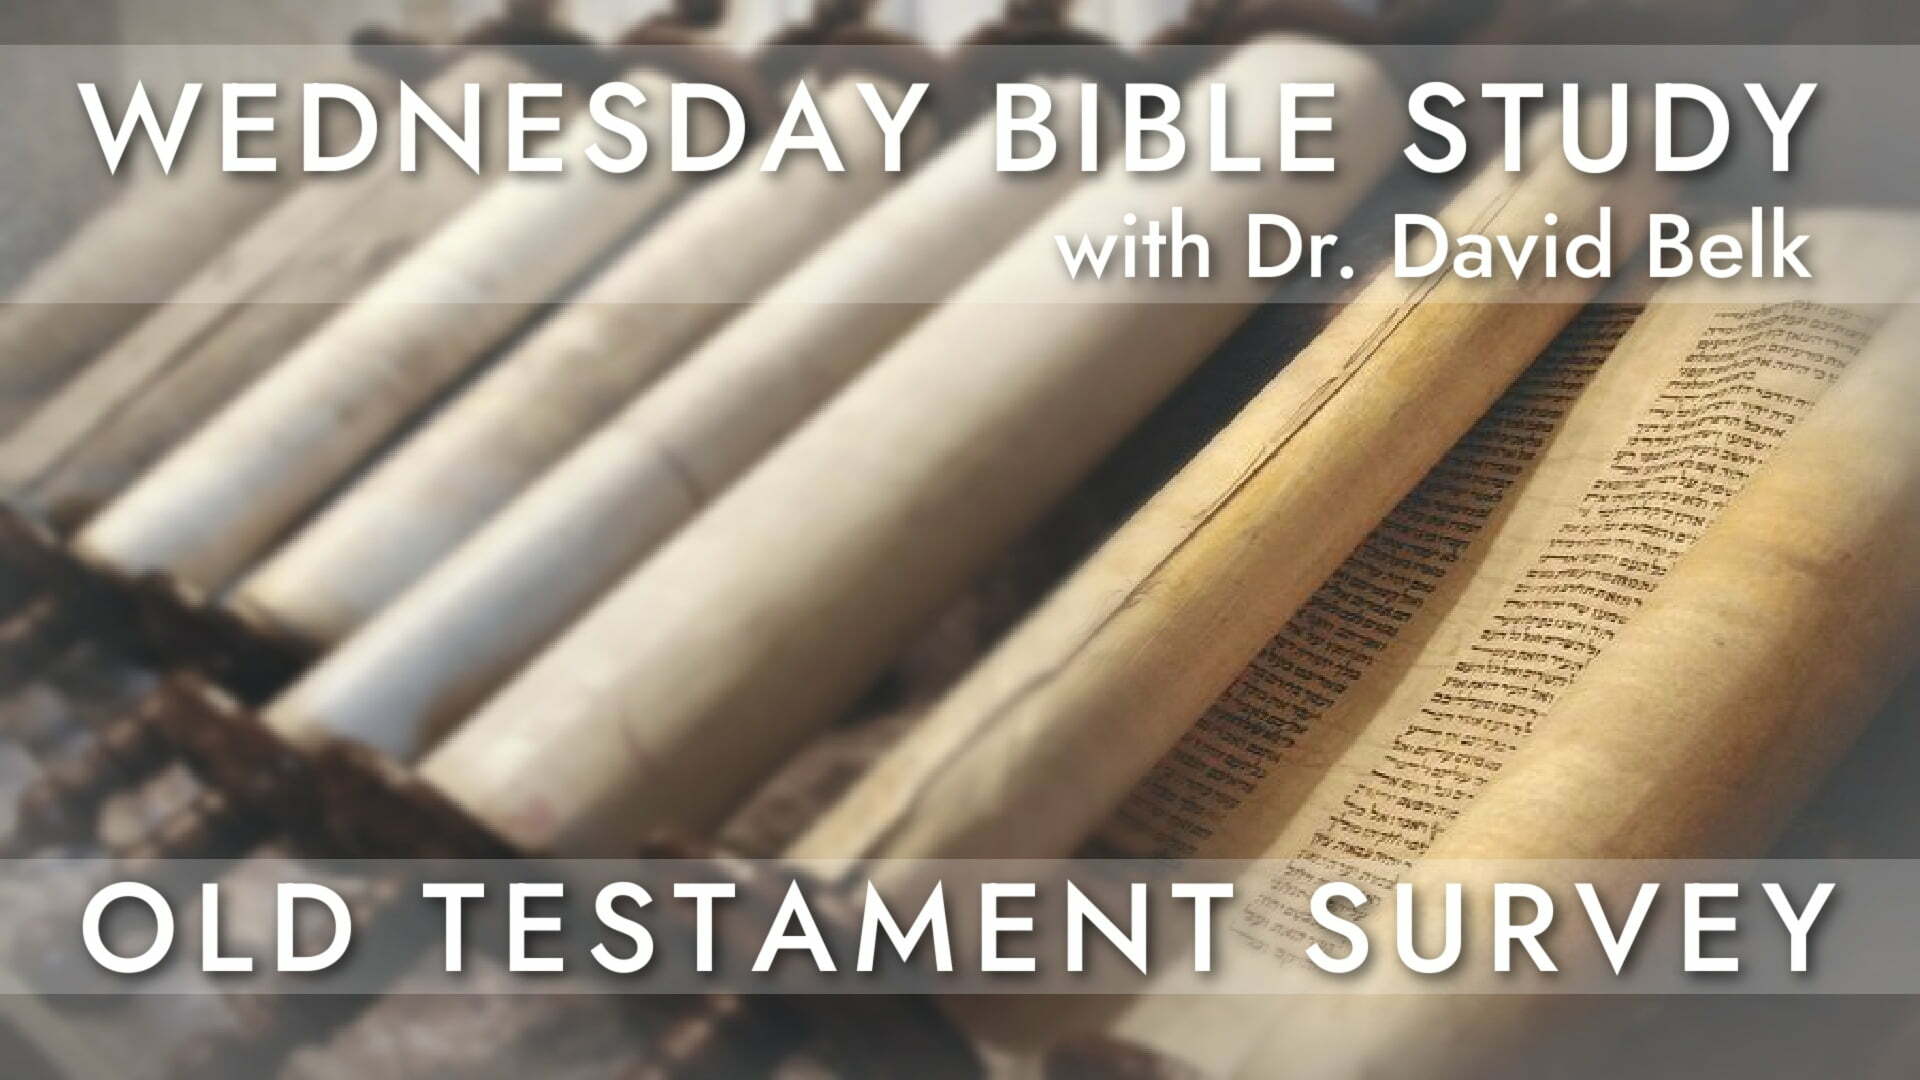 WEDNESDAY BIBLE STUDY